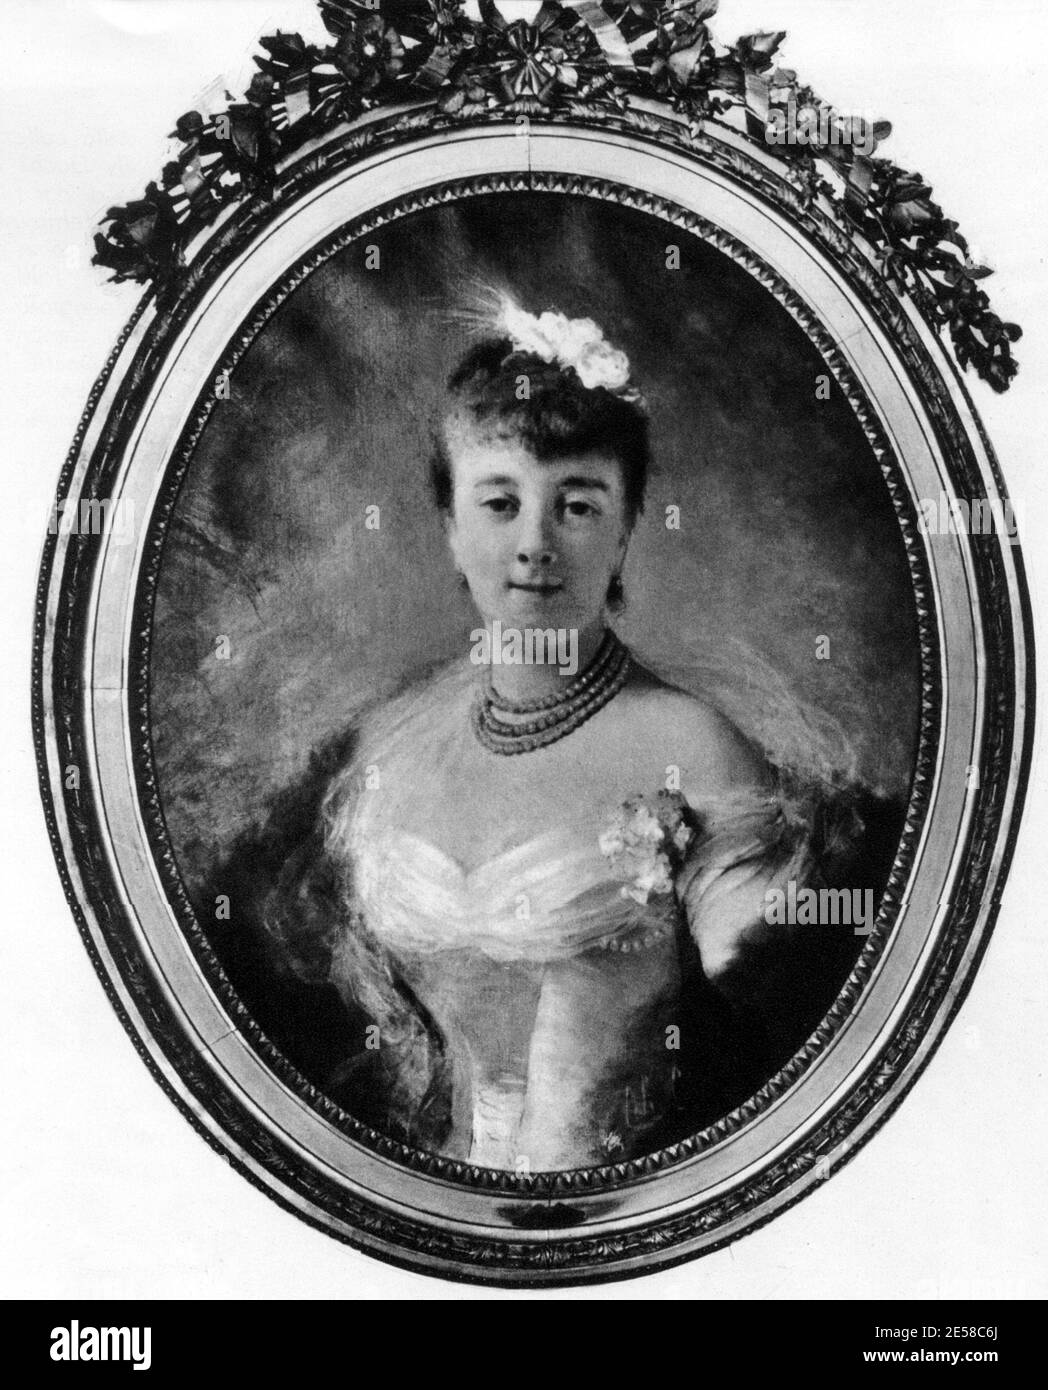 La princesse russe française Maria Rosa BICHETTE RADZIWILL ( 1863 - 1941 ), née Countesse Branitki ( Branika - Braniki ) - la noblesse italienne - Nobiltà ITALIANA RUSSA FRANCESE - principessa - Royalty - portrait - ritratto - BELLE EPOQUE - collana di perle - perla - perles - scollatura - nckline - ouverture de la nuque ---- Archivio GBB Grazia Banque D'Images